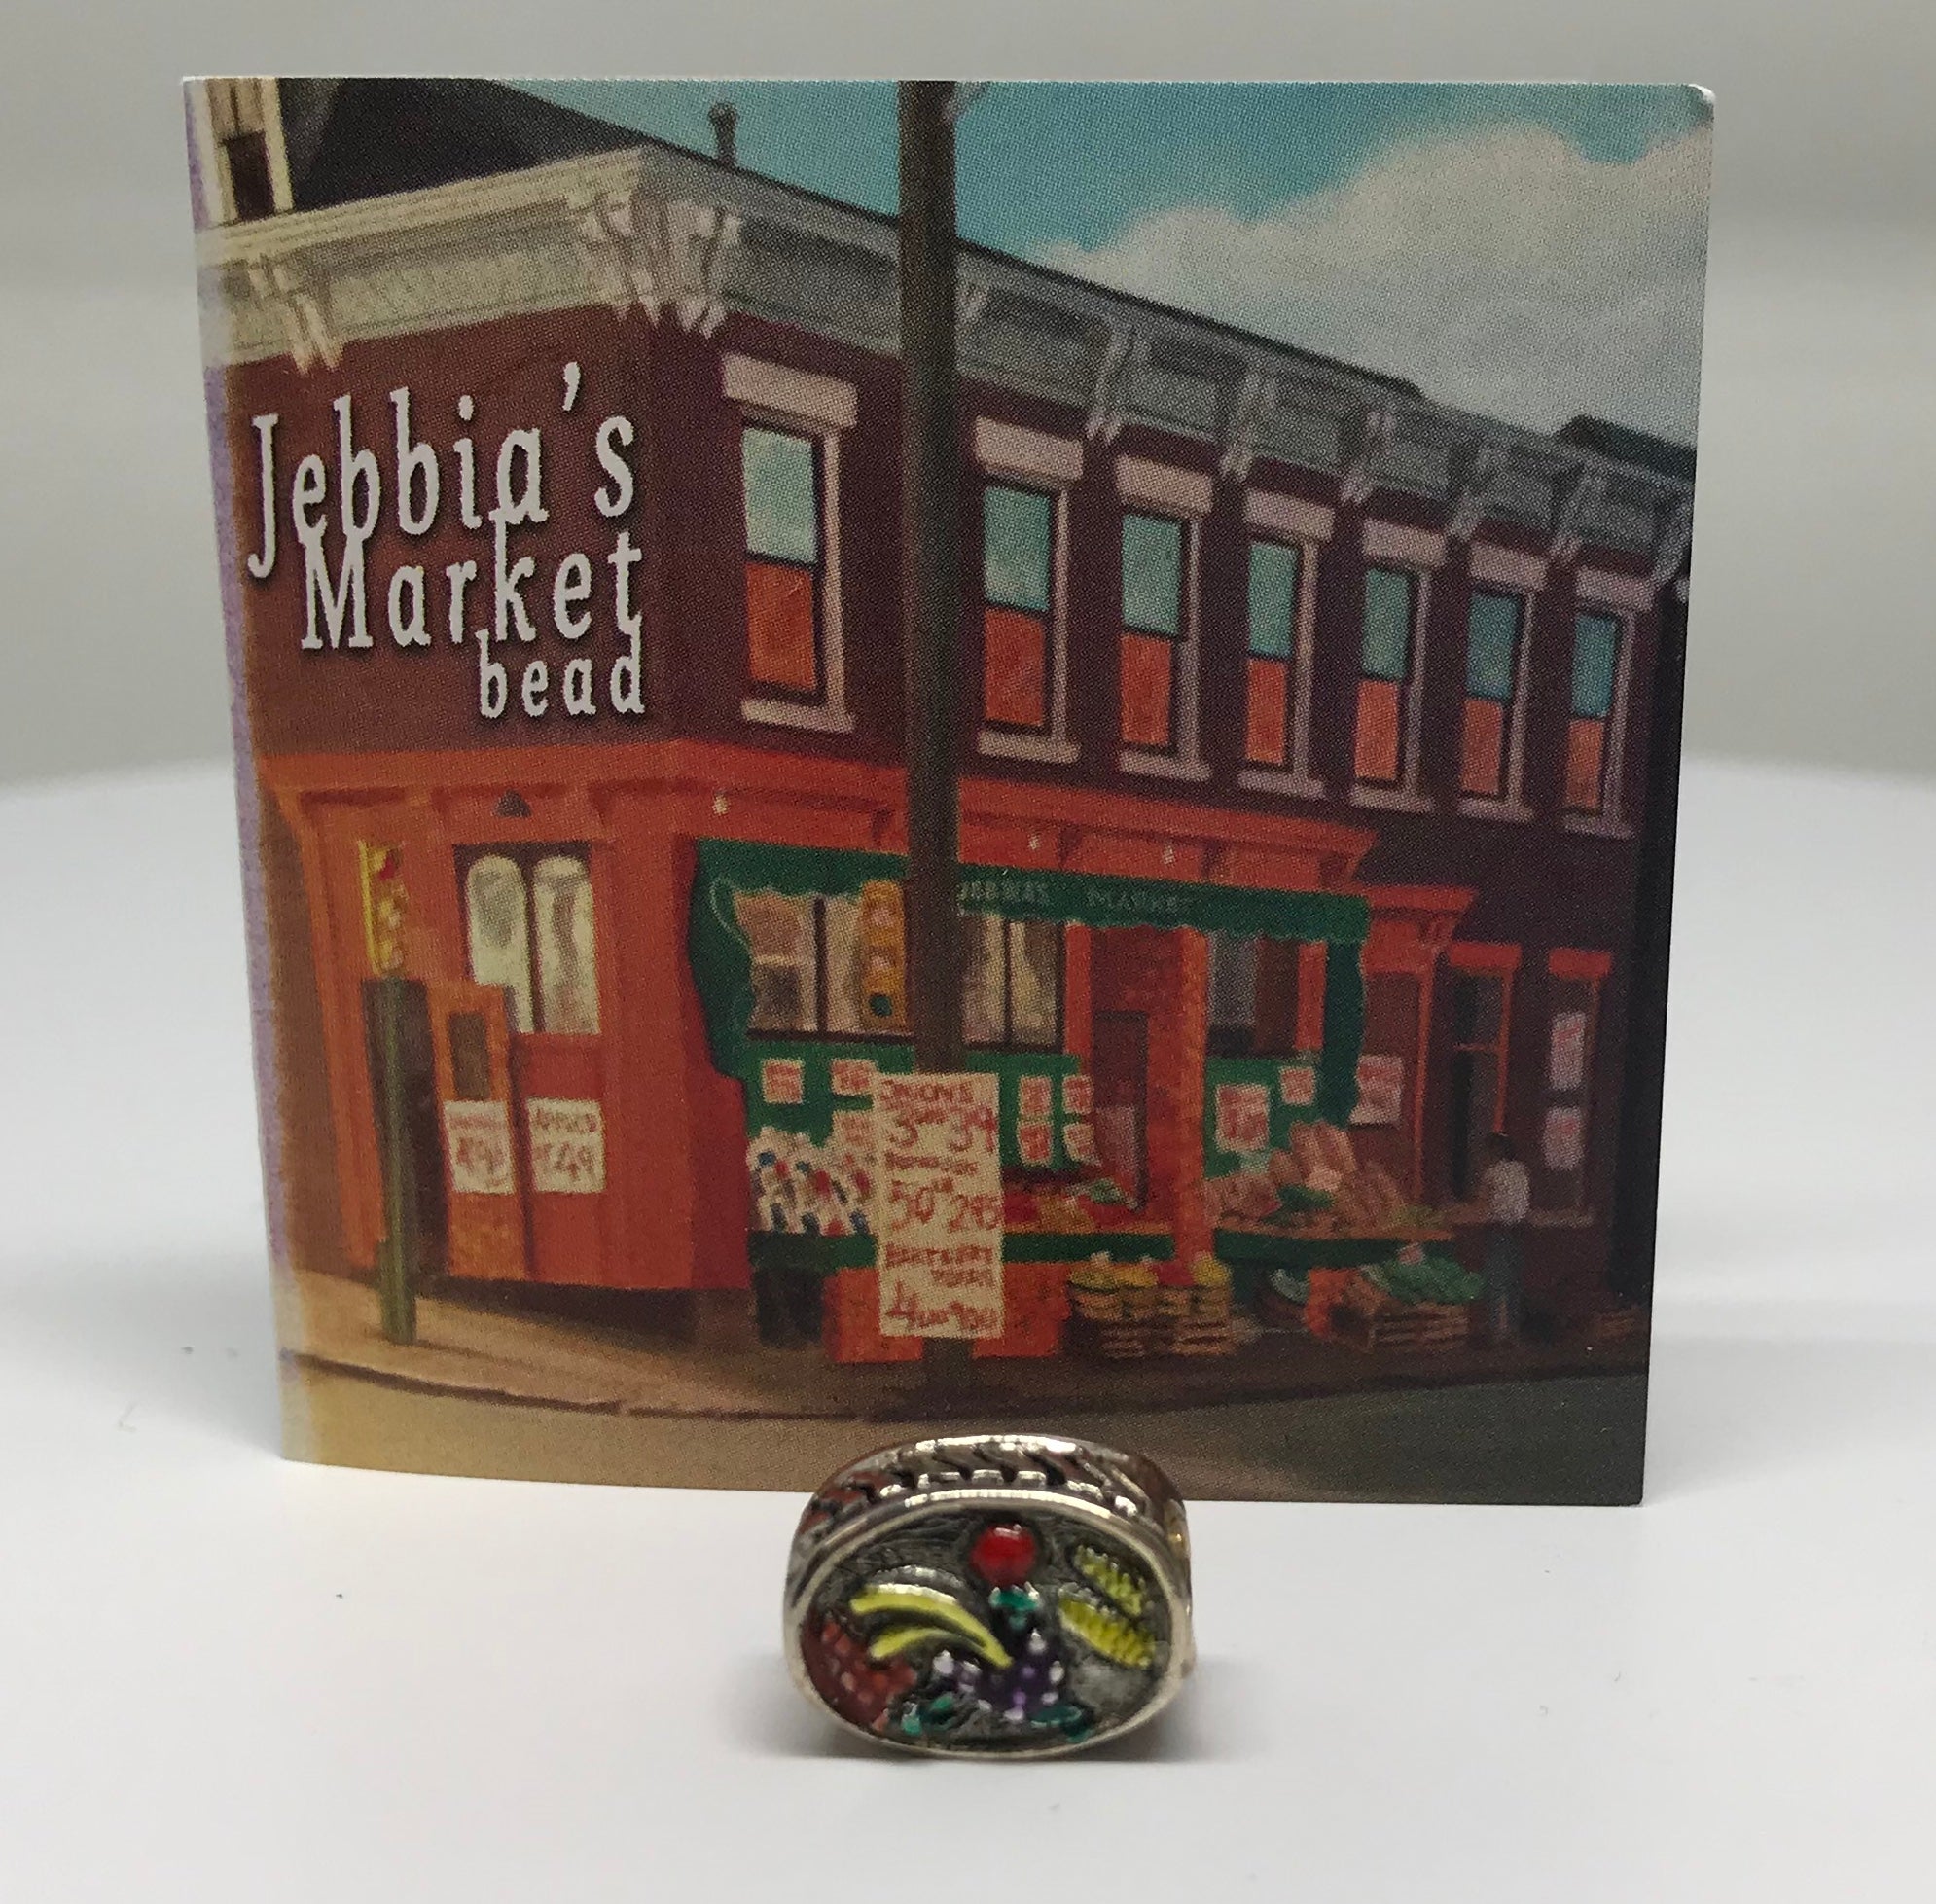 The Jebbia's Market Bead-Howard's Exclusive-Howard's Diamond Center